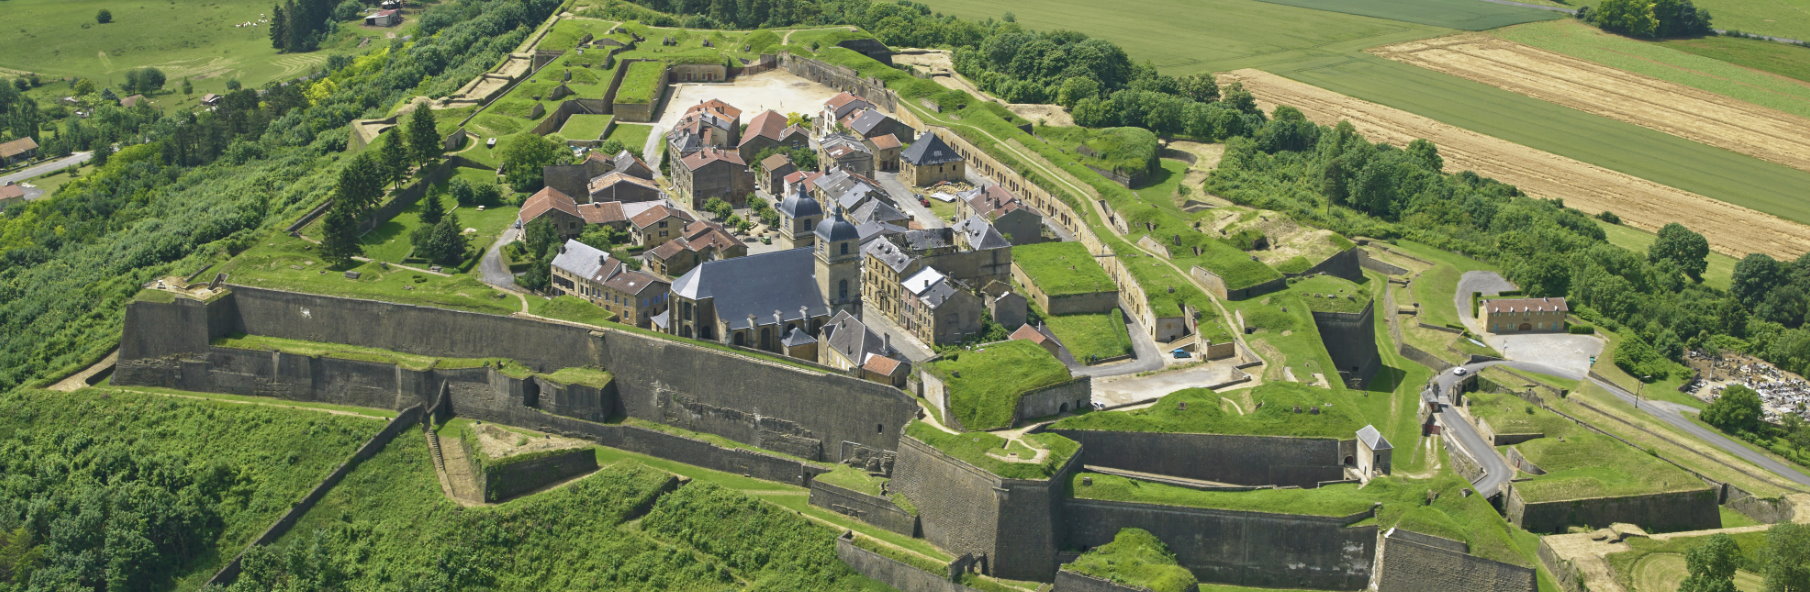 Vue aérienne de la citadelle - ©leuropevueduciel